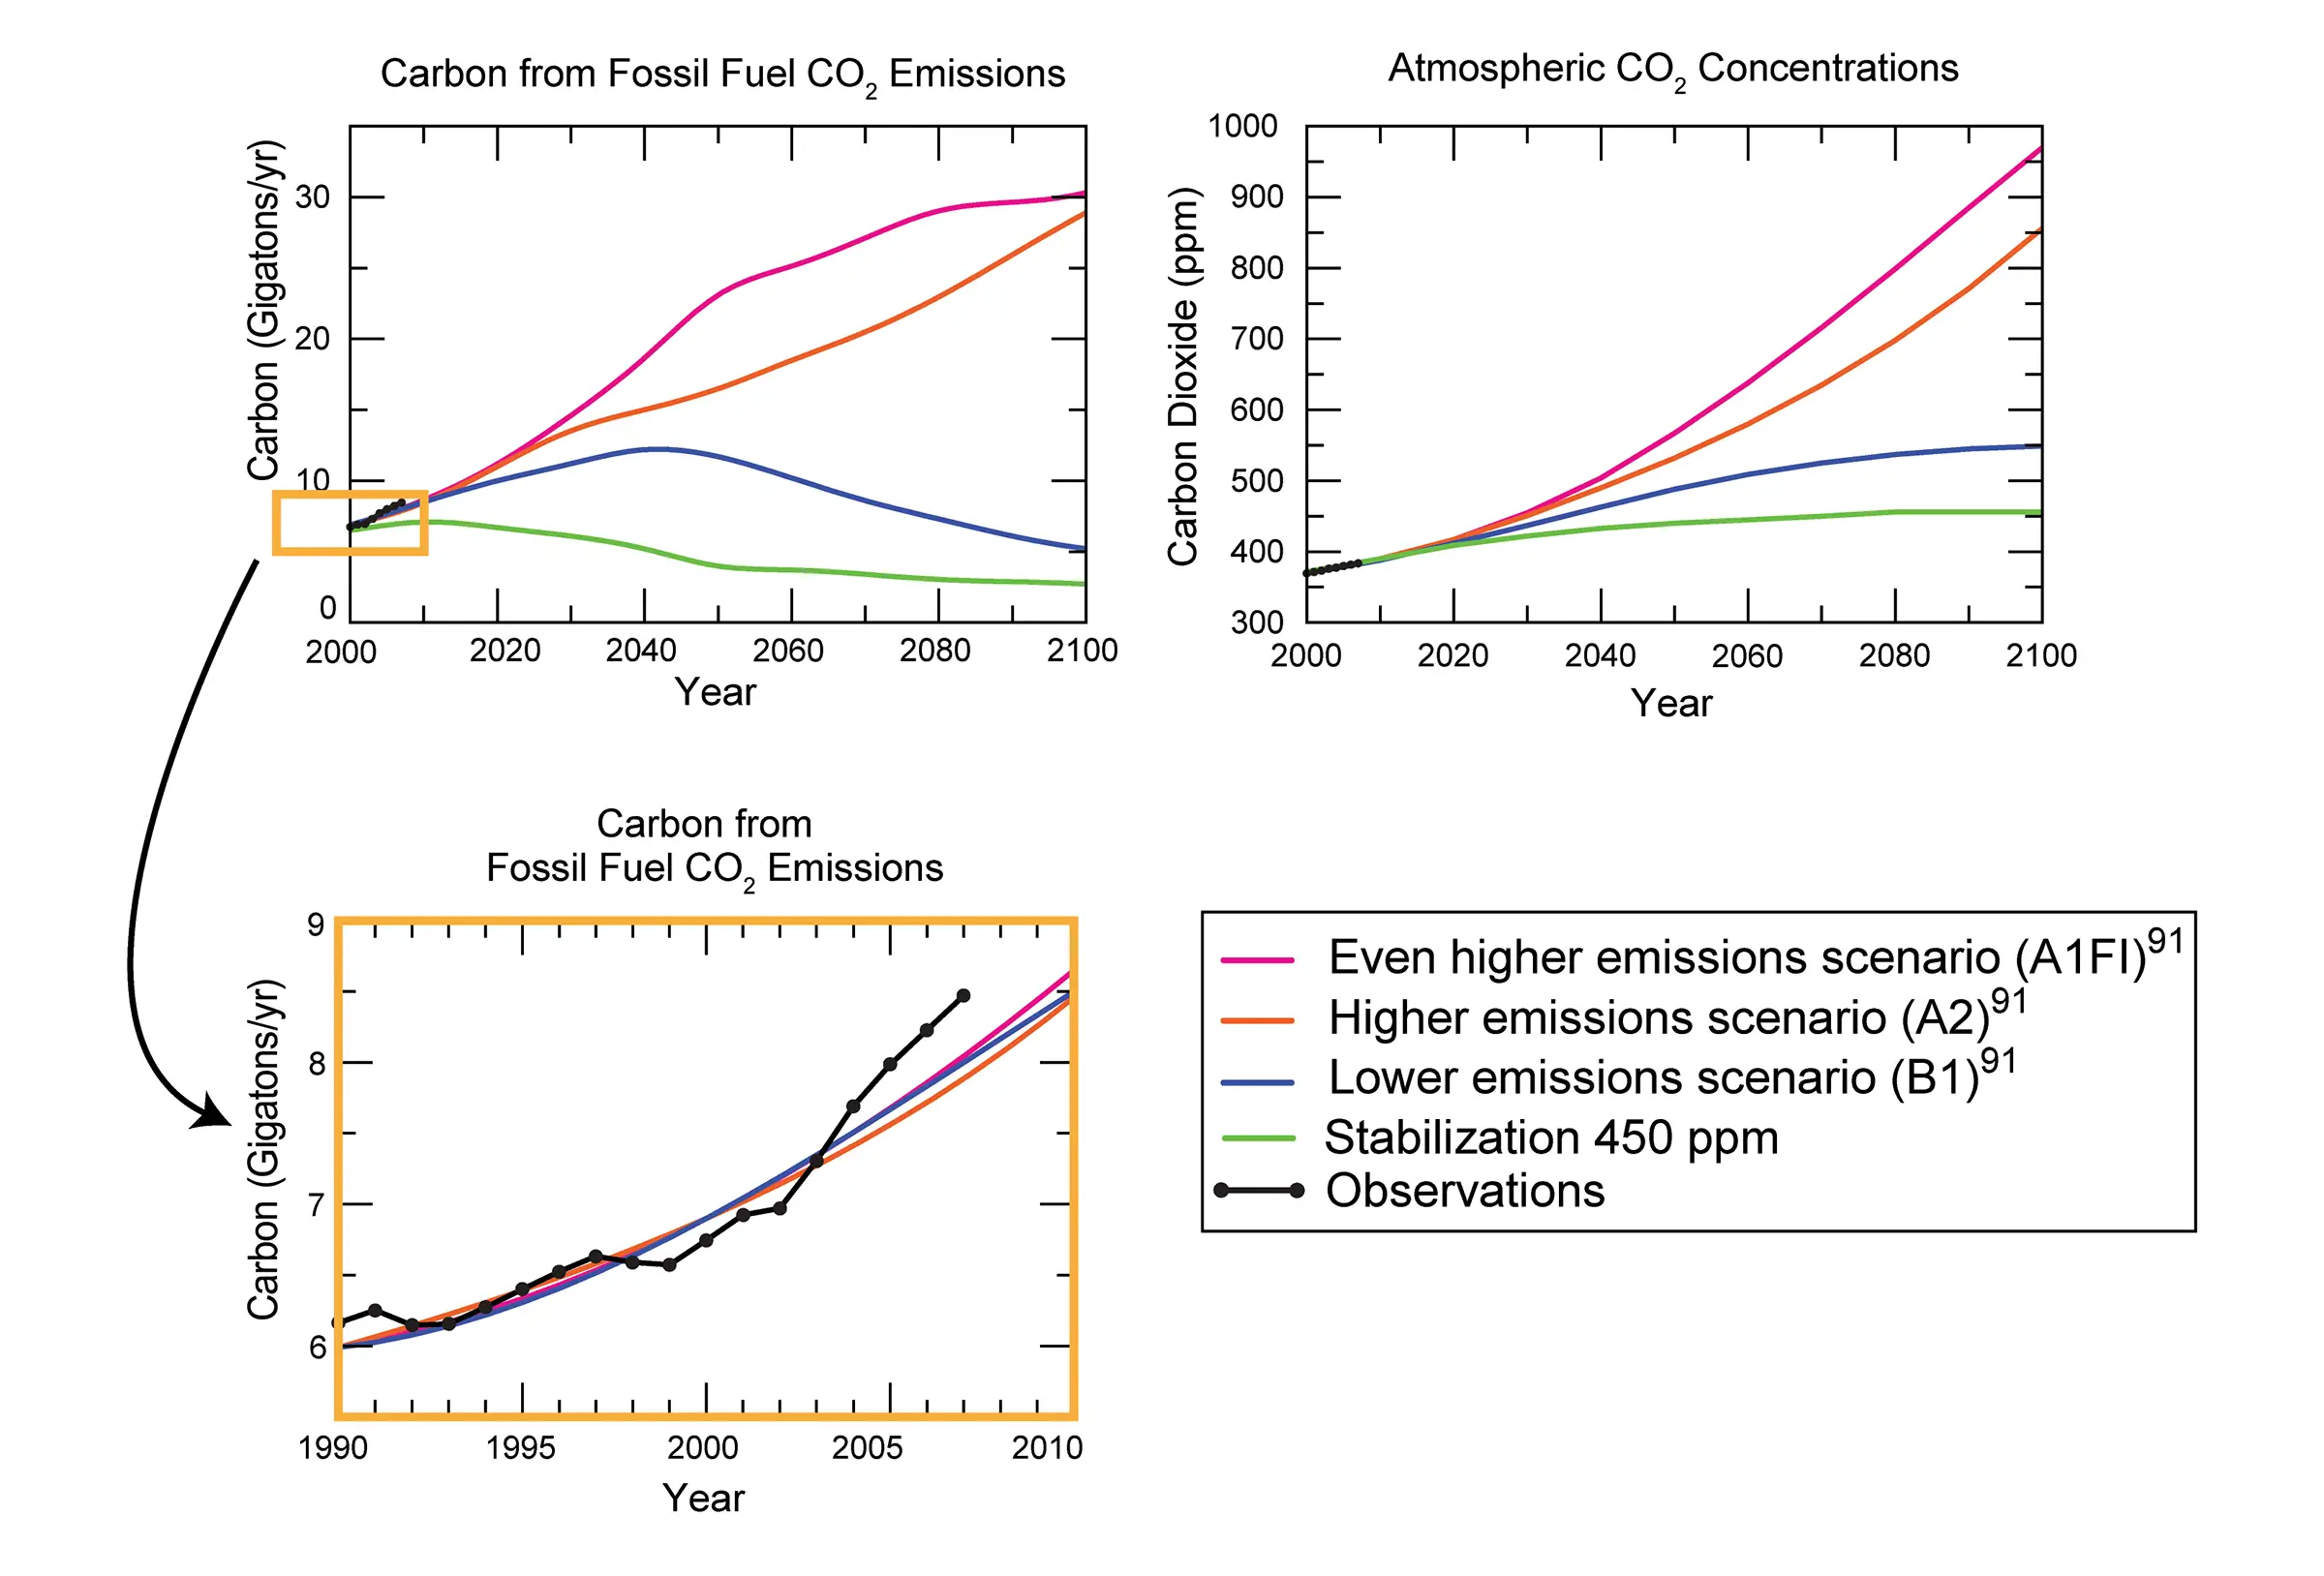 Scénarios projetés d'émissions de CO2. Le graphique en haut à gauche montre le CO2 émis en milliards de tonnes, et le graphique en haut à droite montre la concentration de CO2. Même pour la ligne verte, qui diminue drastiquement les émissions de CO2, les concentrations de CO2 continuent d'augmenter avant de se stabiliser.